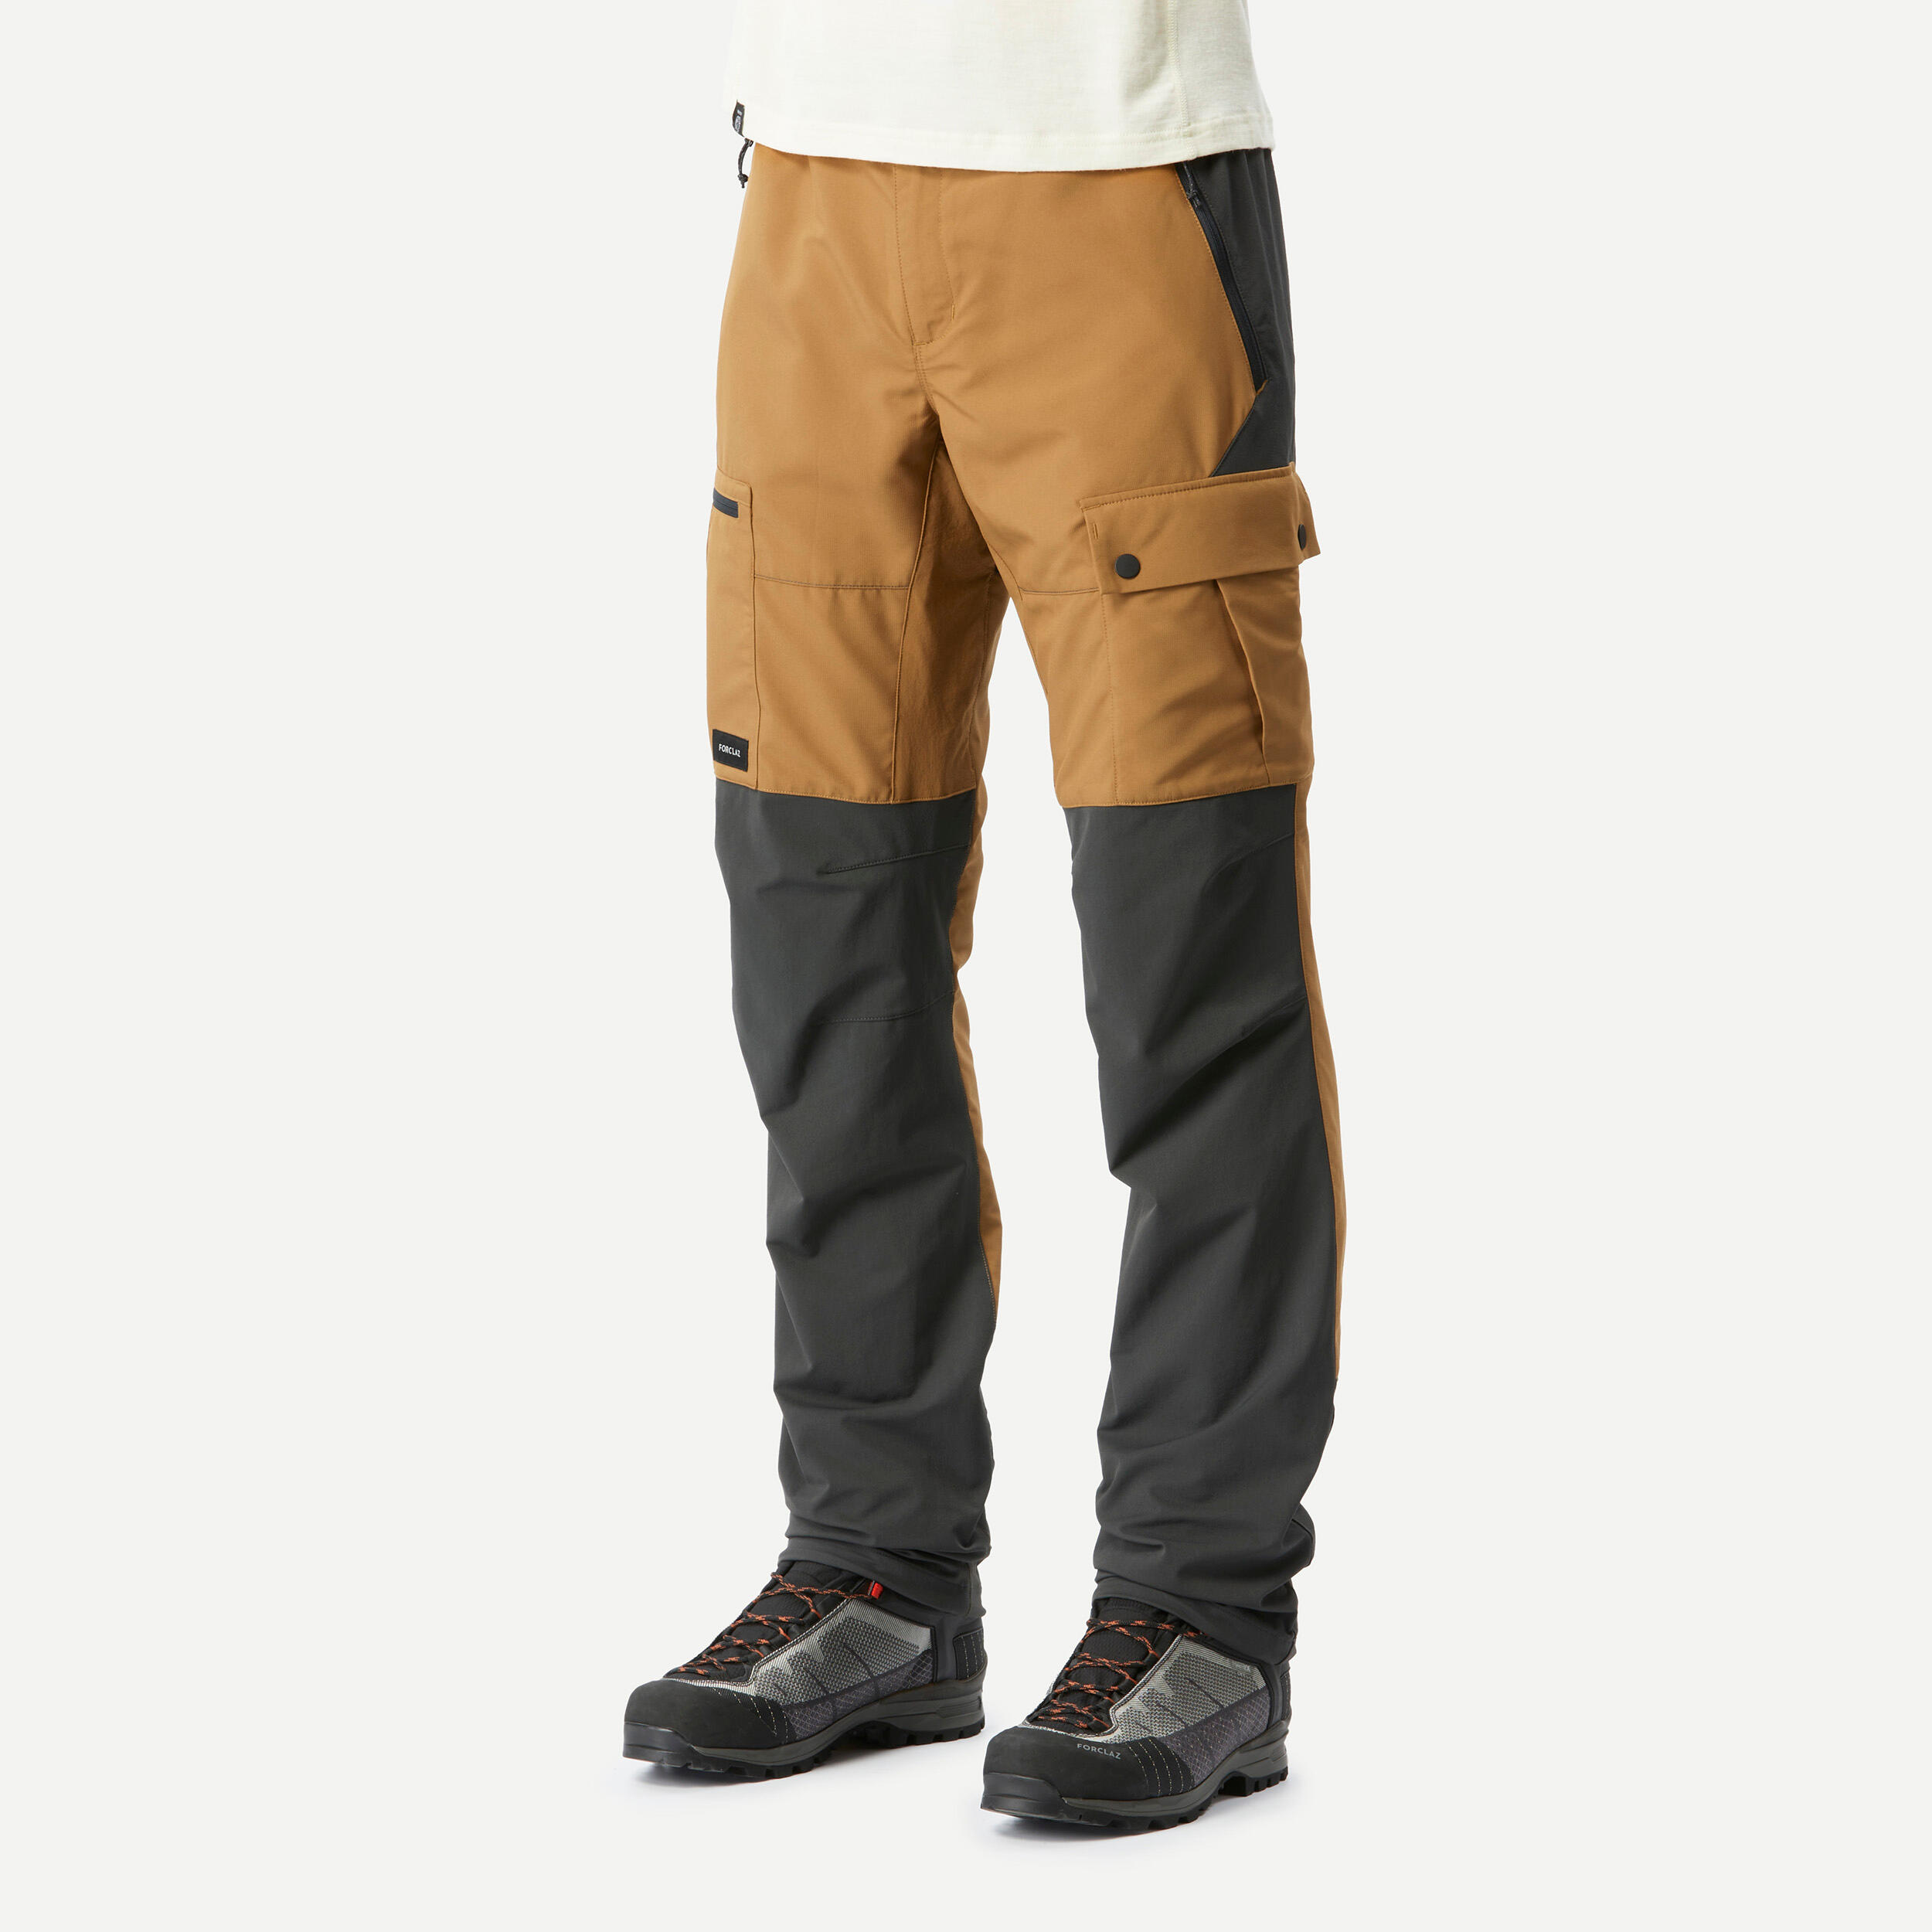 FORCLAZ Men's durable trekking trousers - MT500